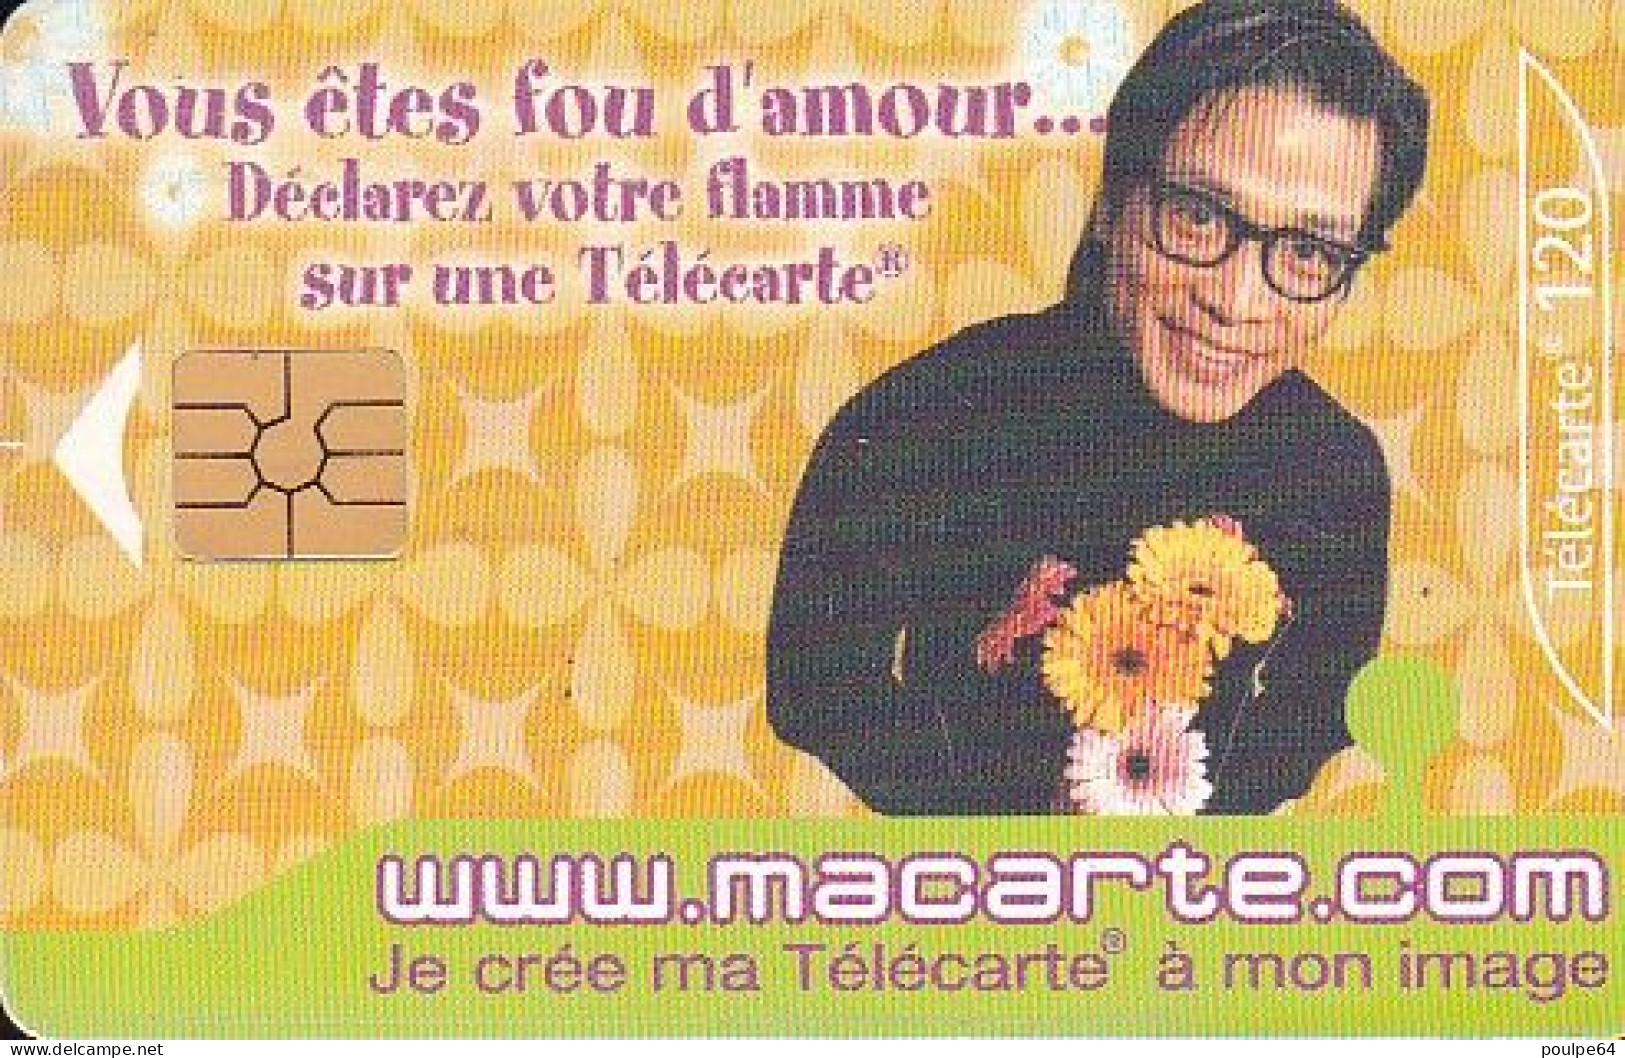 F1182  10/2001 - MACARTE.COM " Fou D'amour " - 120 GEM2 - 2001